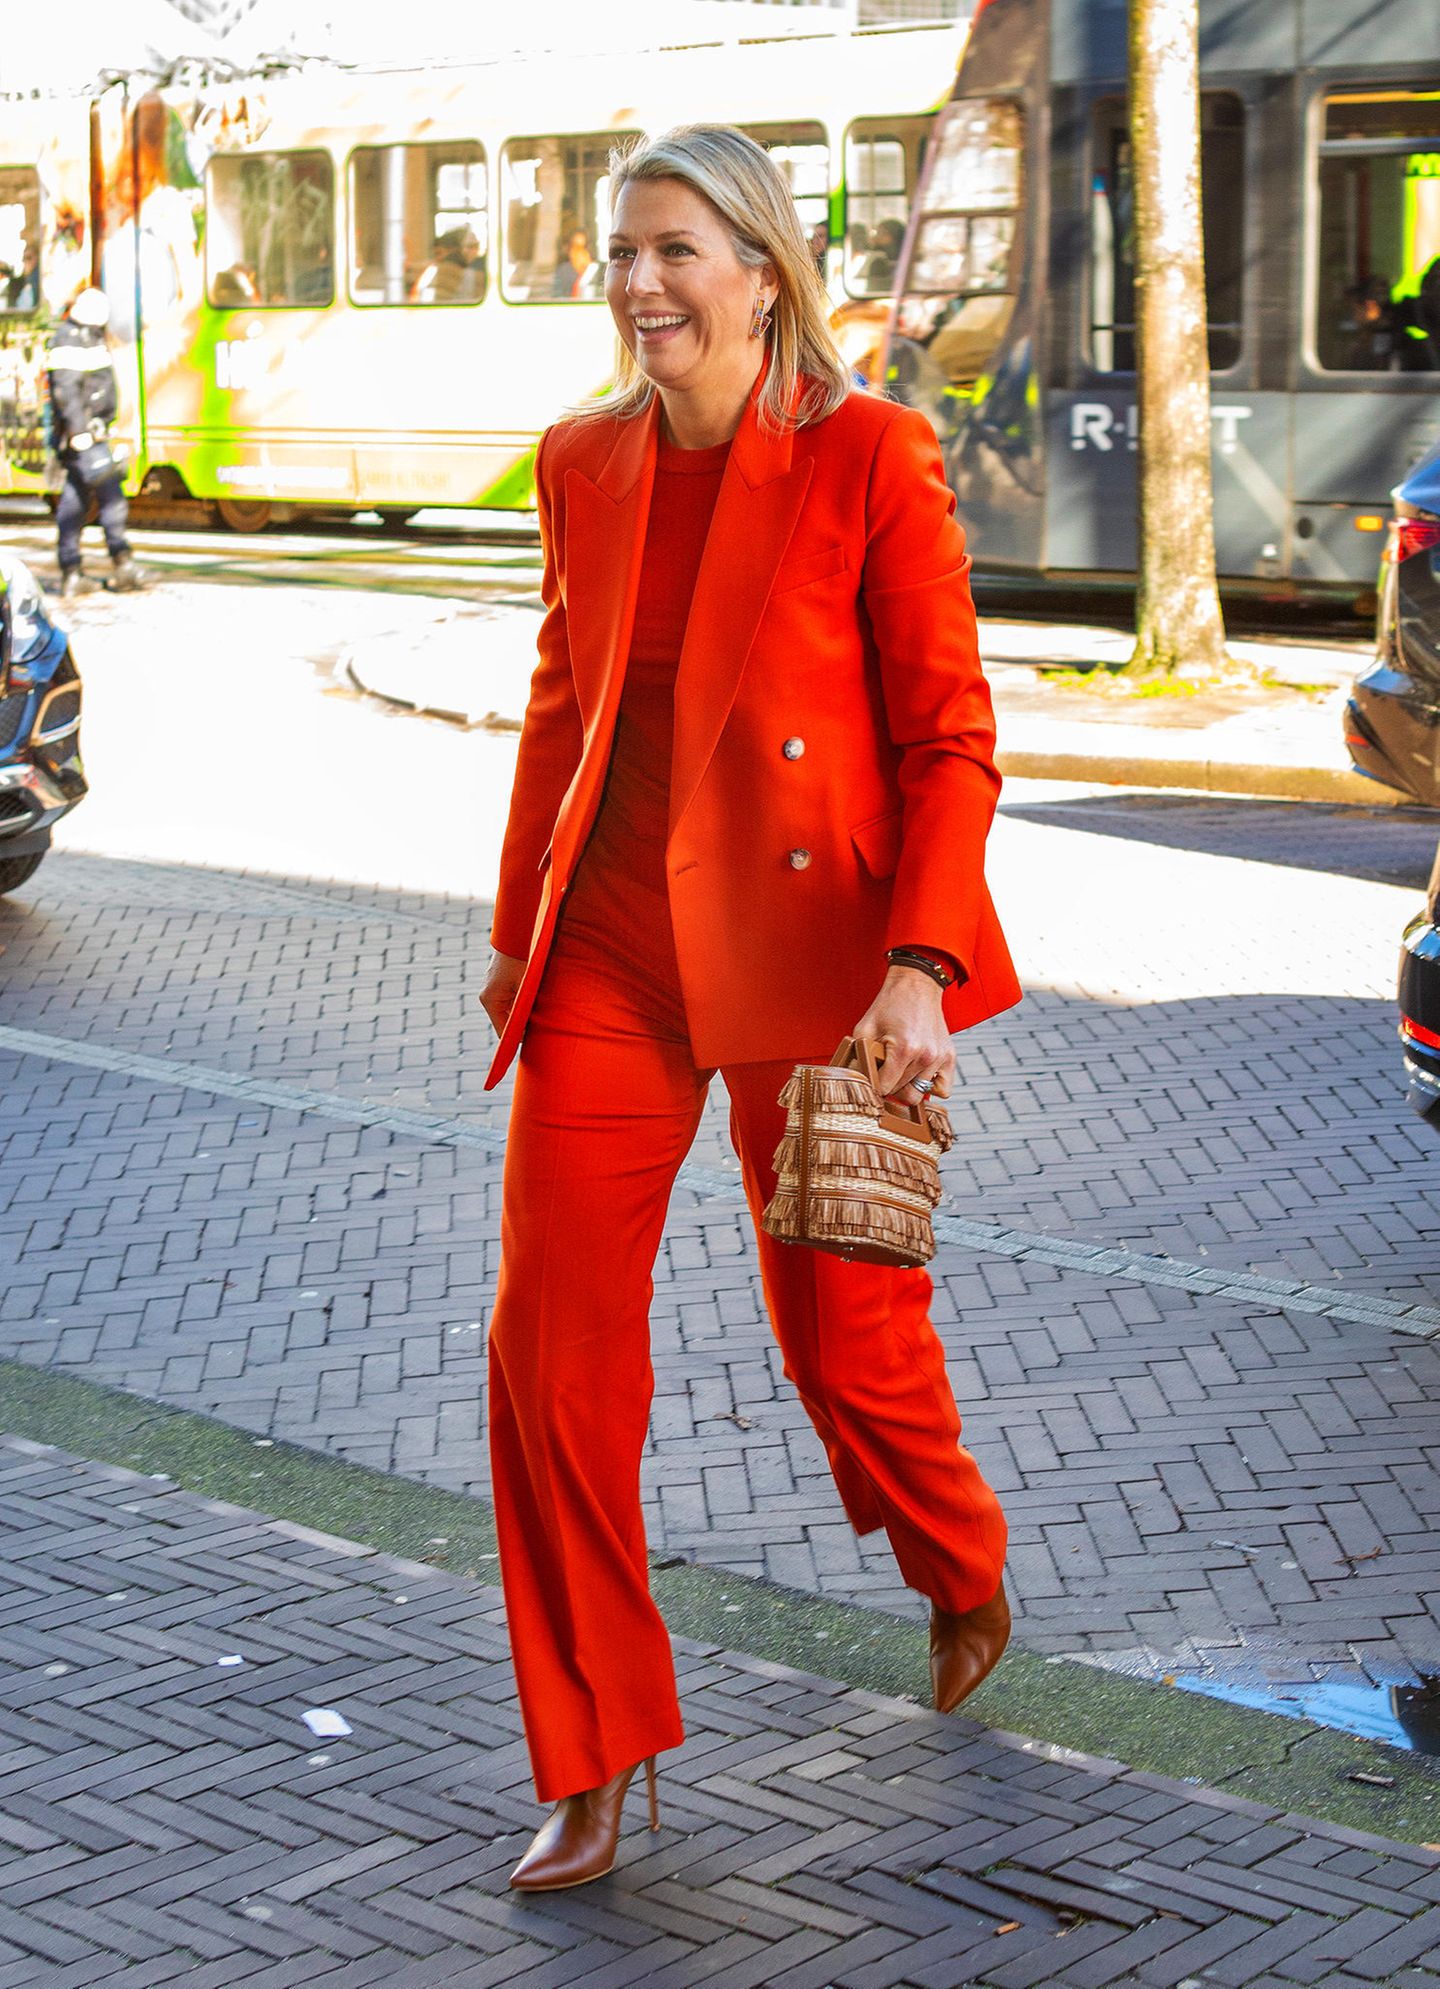 Nicht zu übersehen: Für ihren Besuch des Filmhuis in Den Haag hat sich Königin Máxima mal wieder einen besonders auffälligen Look ausgesucht. Der orangefarbene Anzug mit passendem Shirt stammt von britischen Label Joseph, und auch die Fringe Bag von Marina Raphael ist ein witziger Hingucker.